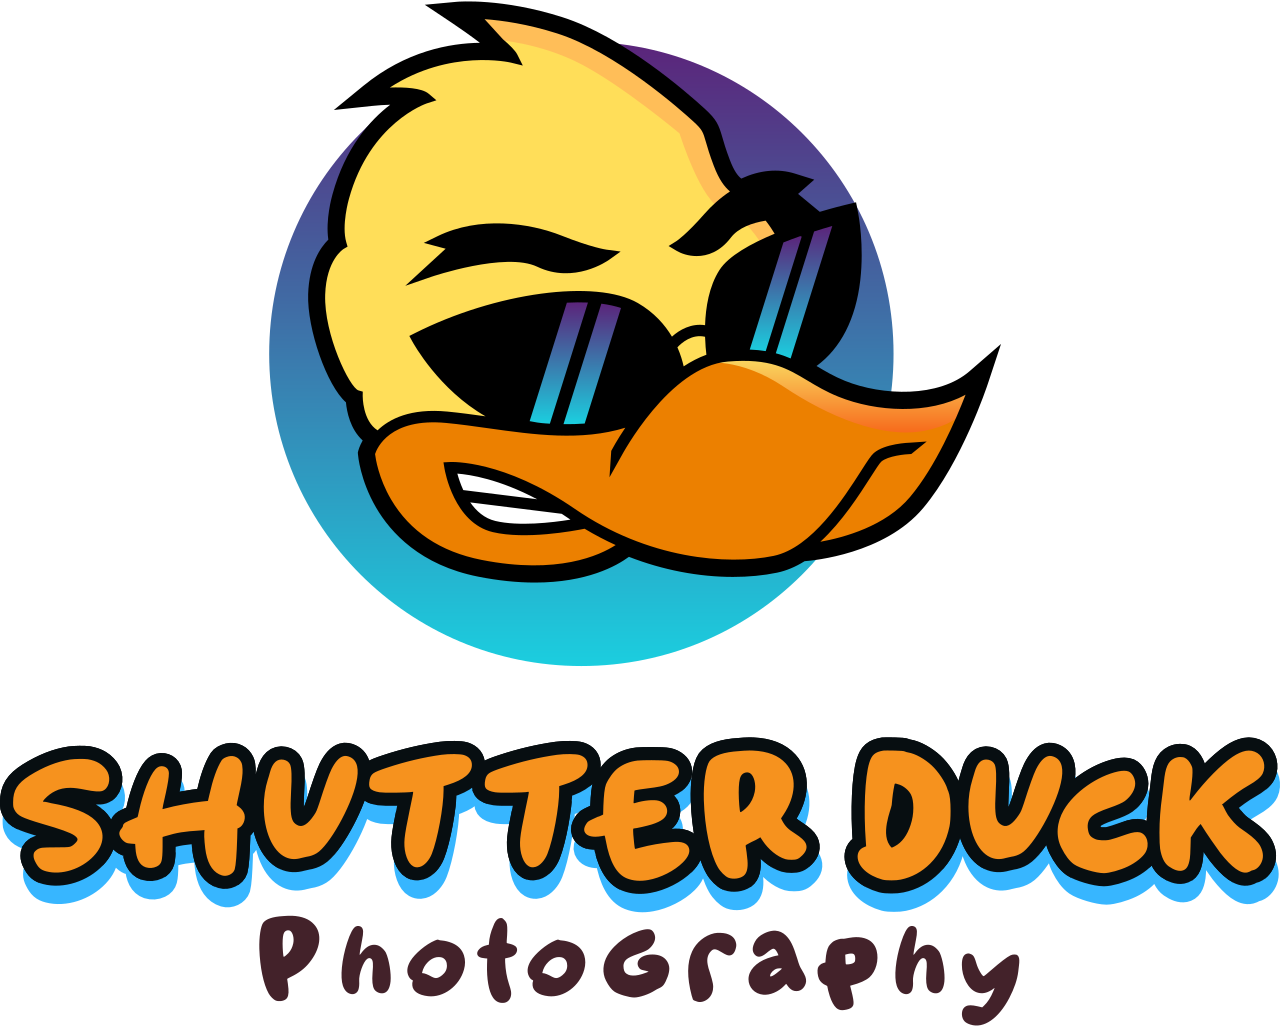 Shutter Duck's logo